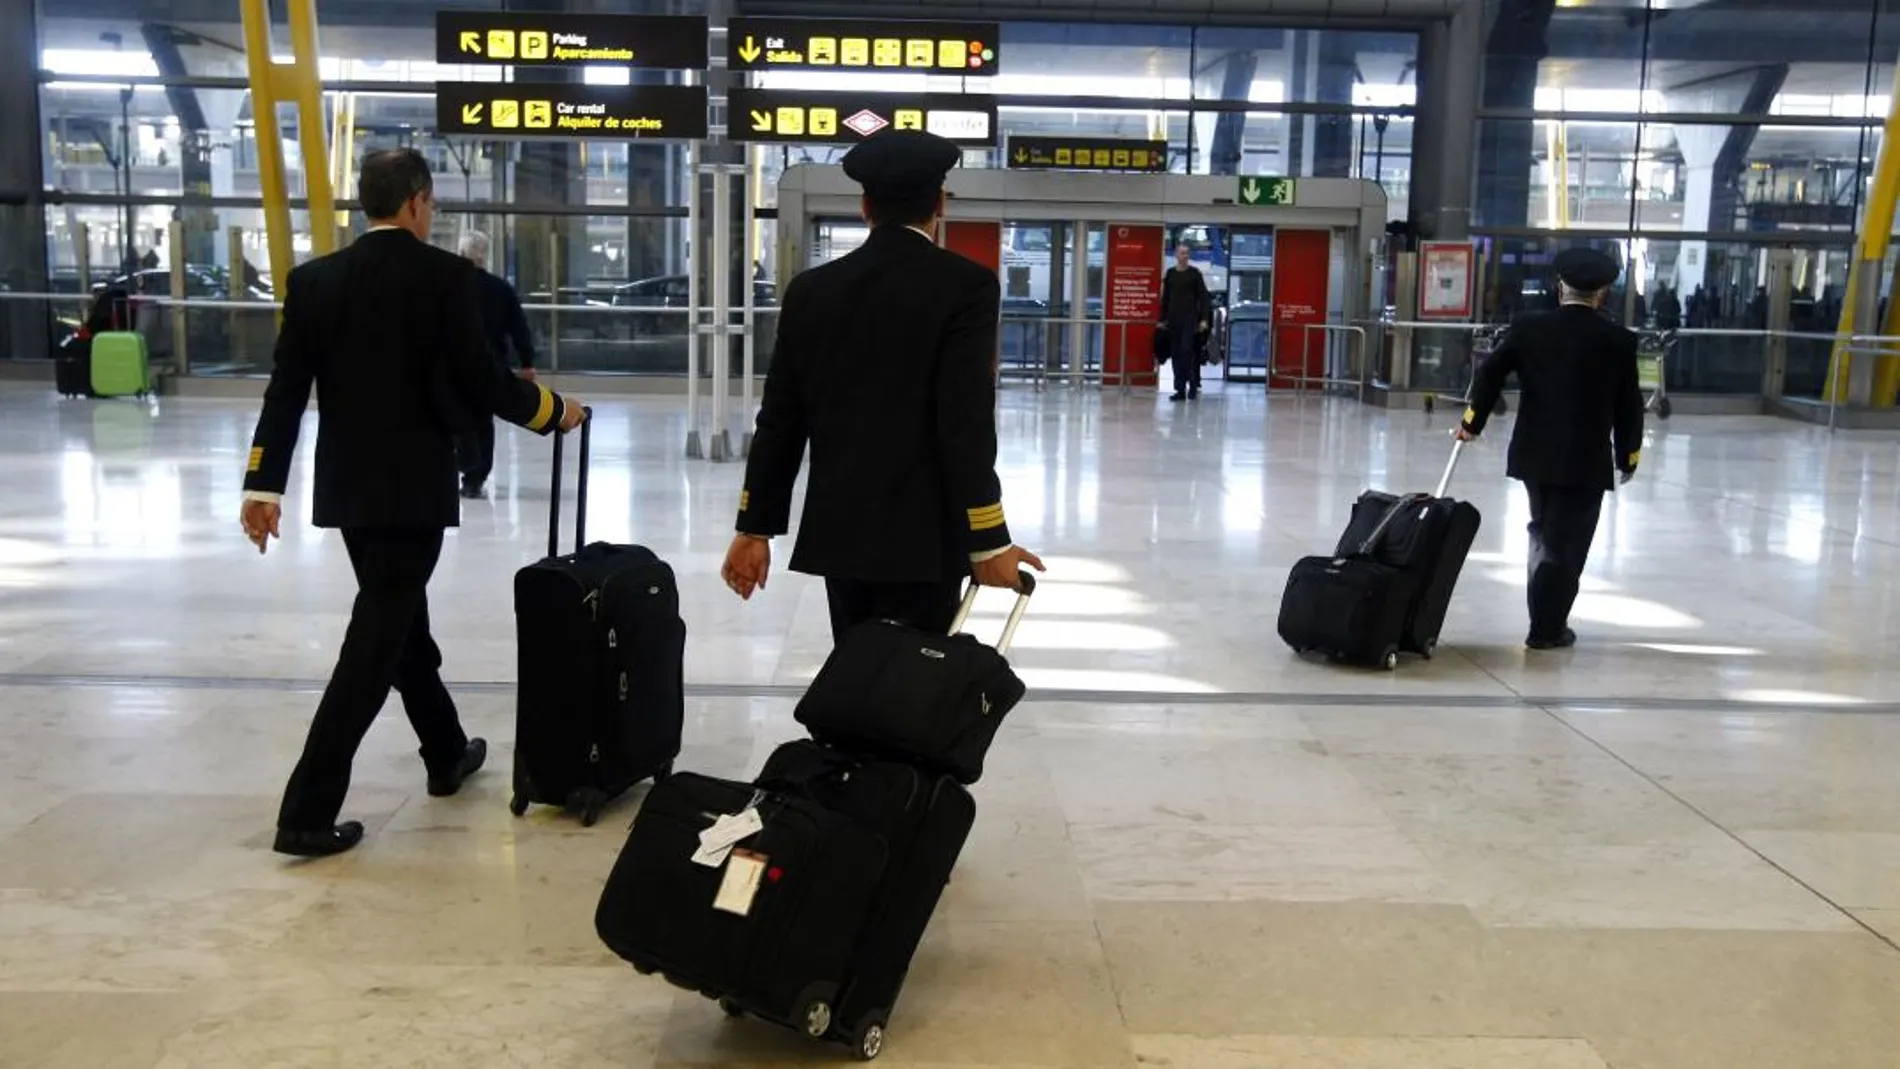 El aeropuerto Adolfo Suárez Madrid-Barajas fue el que registró un mayor número de pasajeros en 2017